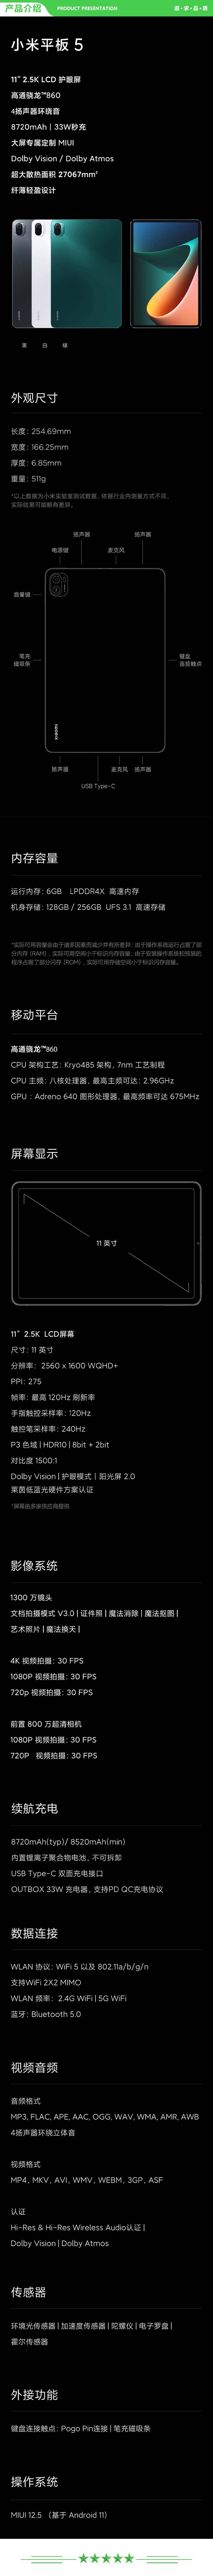 小米 xiaomi 平板5 平板电脑（11英寸2.5K高清 120Hz 骁龙860 6G+128GB 33W快充 杜比影音娱乐办公 白色）+ 键盘套装.jpg